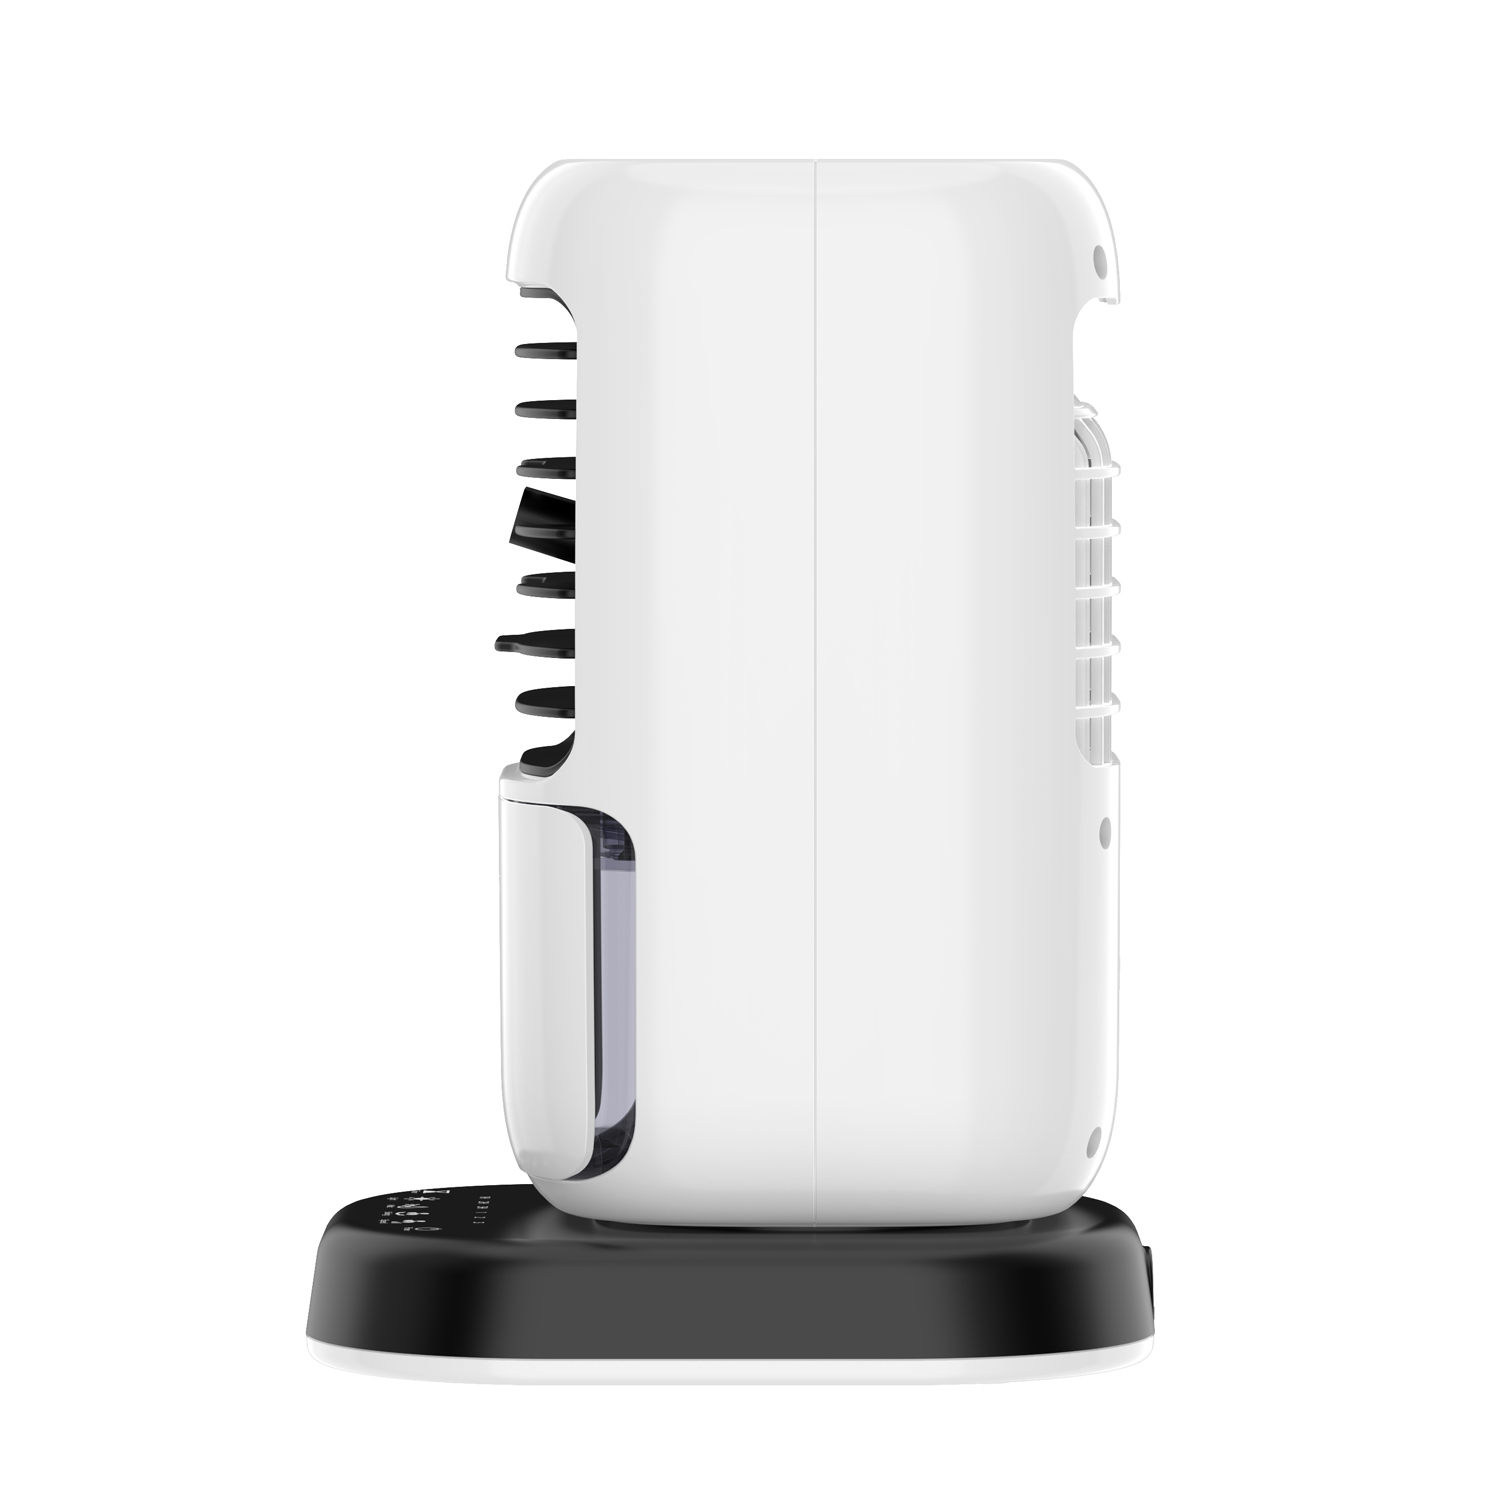 Salente IceTop, stolní ochlazovač & ventilátor & zvlhčovač vzduchu 3v1, bílý 